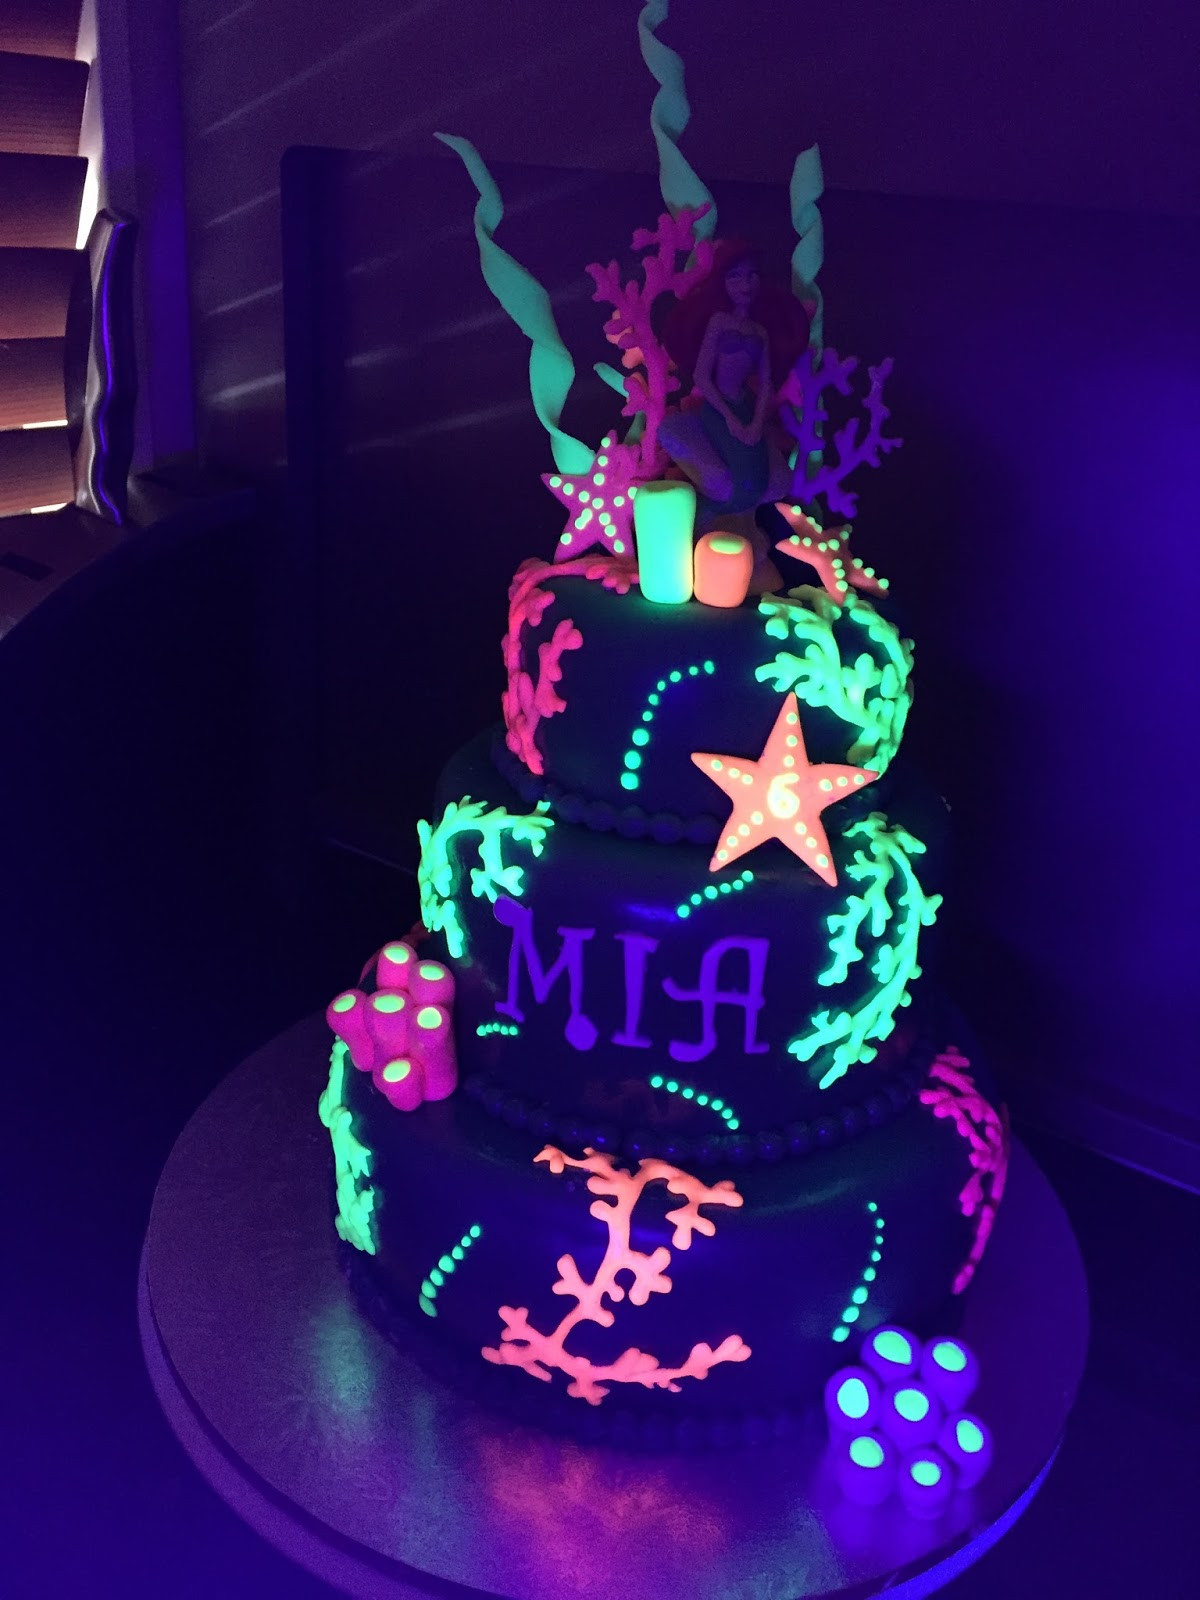 Glow In The Dark Birthday Cake
 Kiwi Cakes Glow in the dark cake from Kiwicaker Sonja